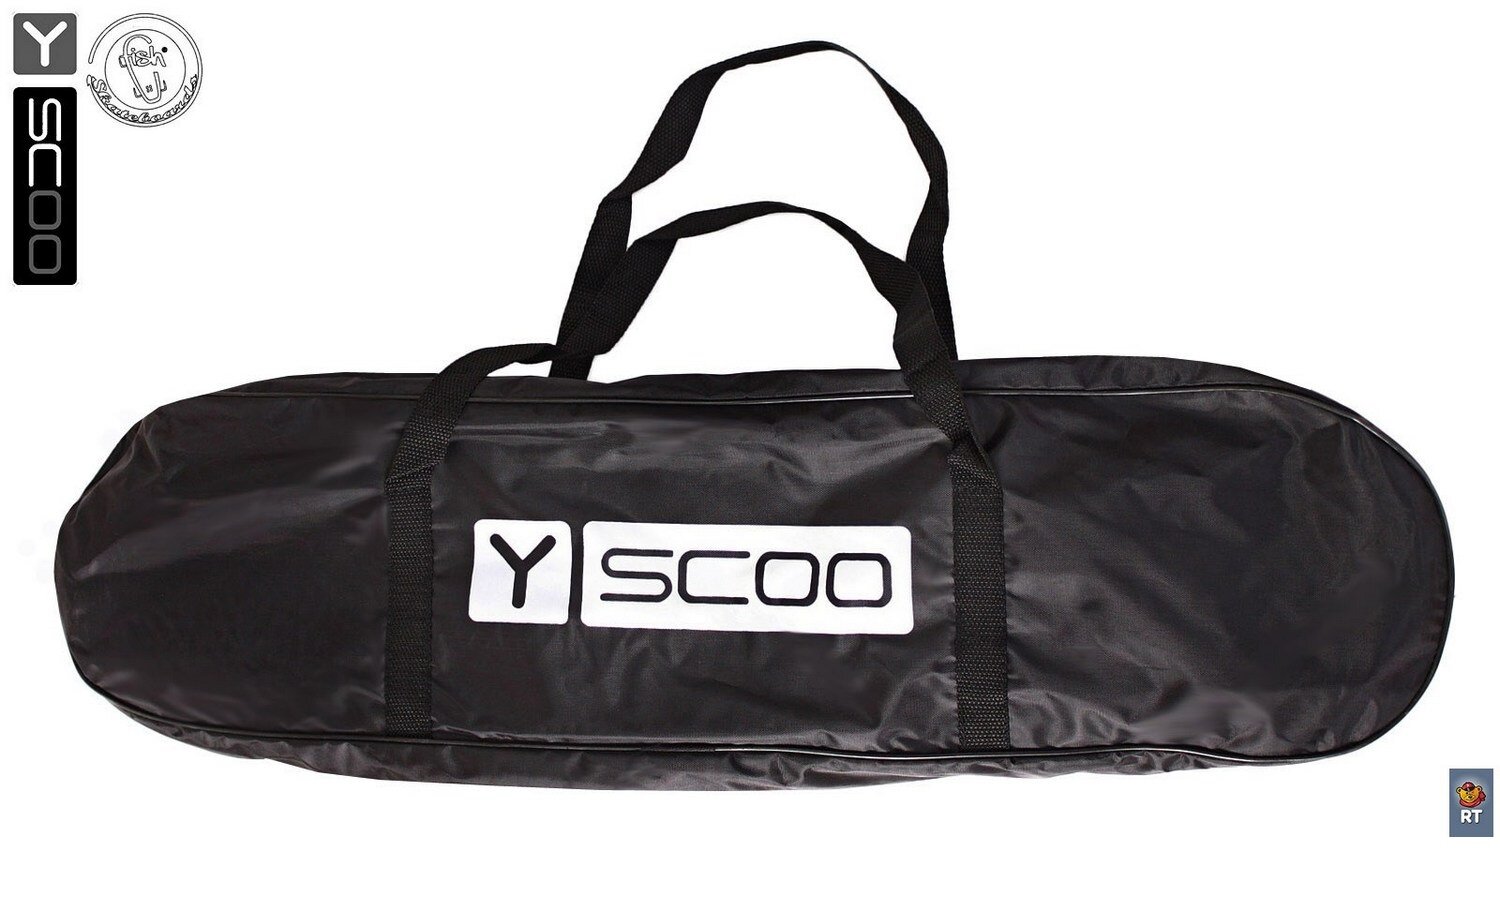 Скейтборд Y-SCOO Longboard Shark TIR 31 пластик 79 с сумкой CHAOS RED/black